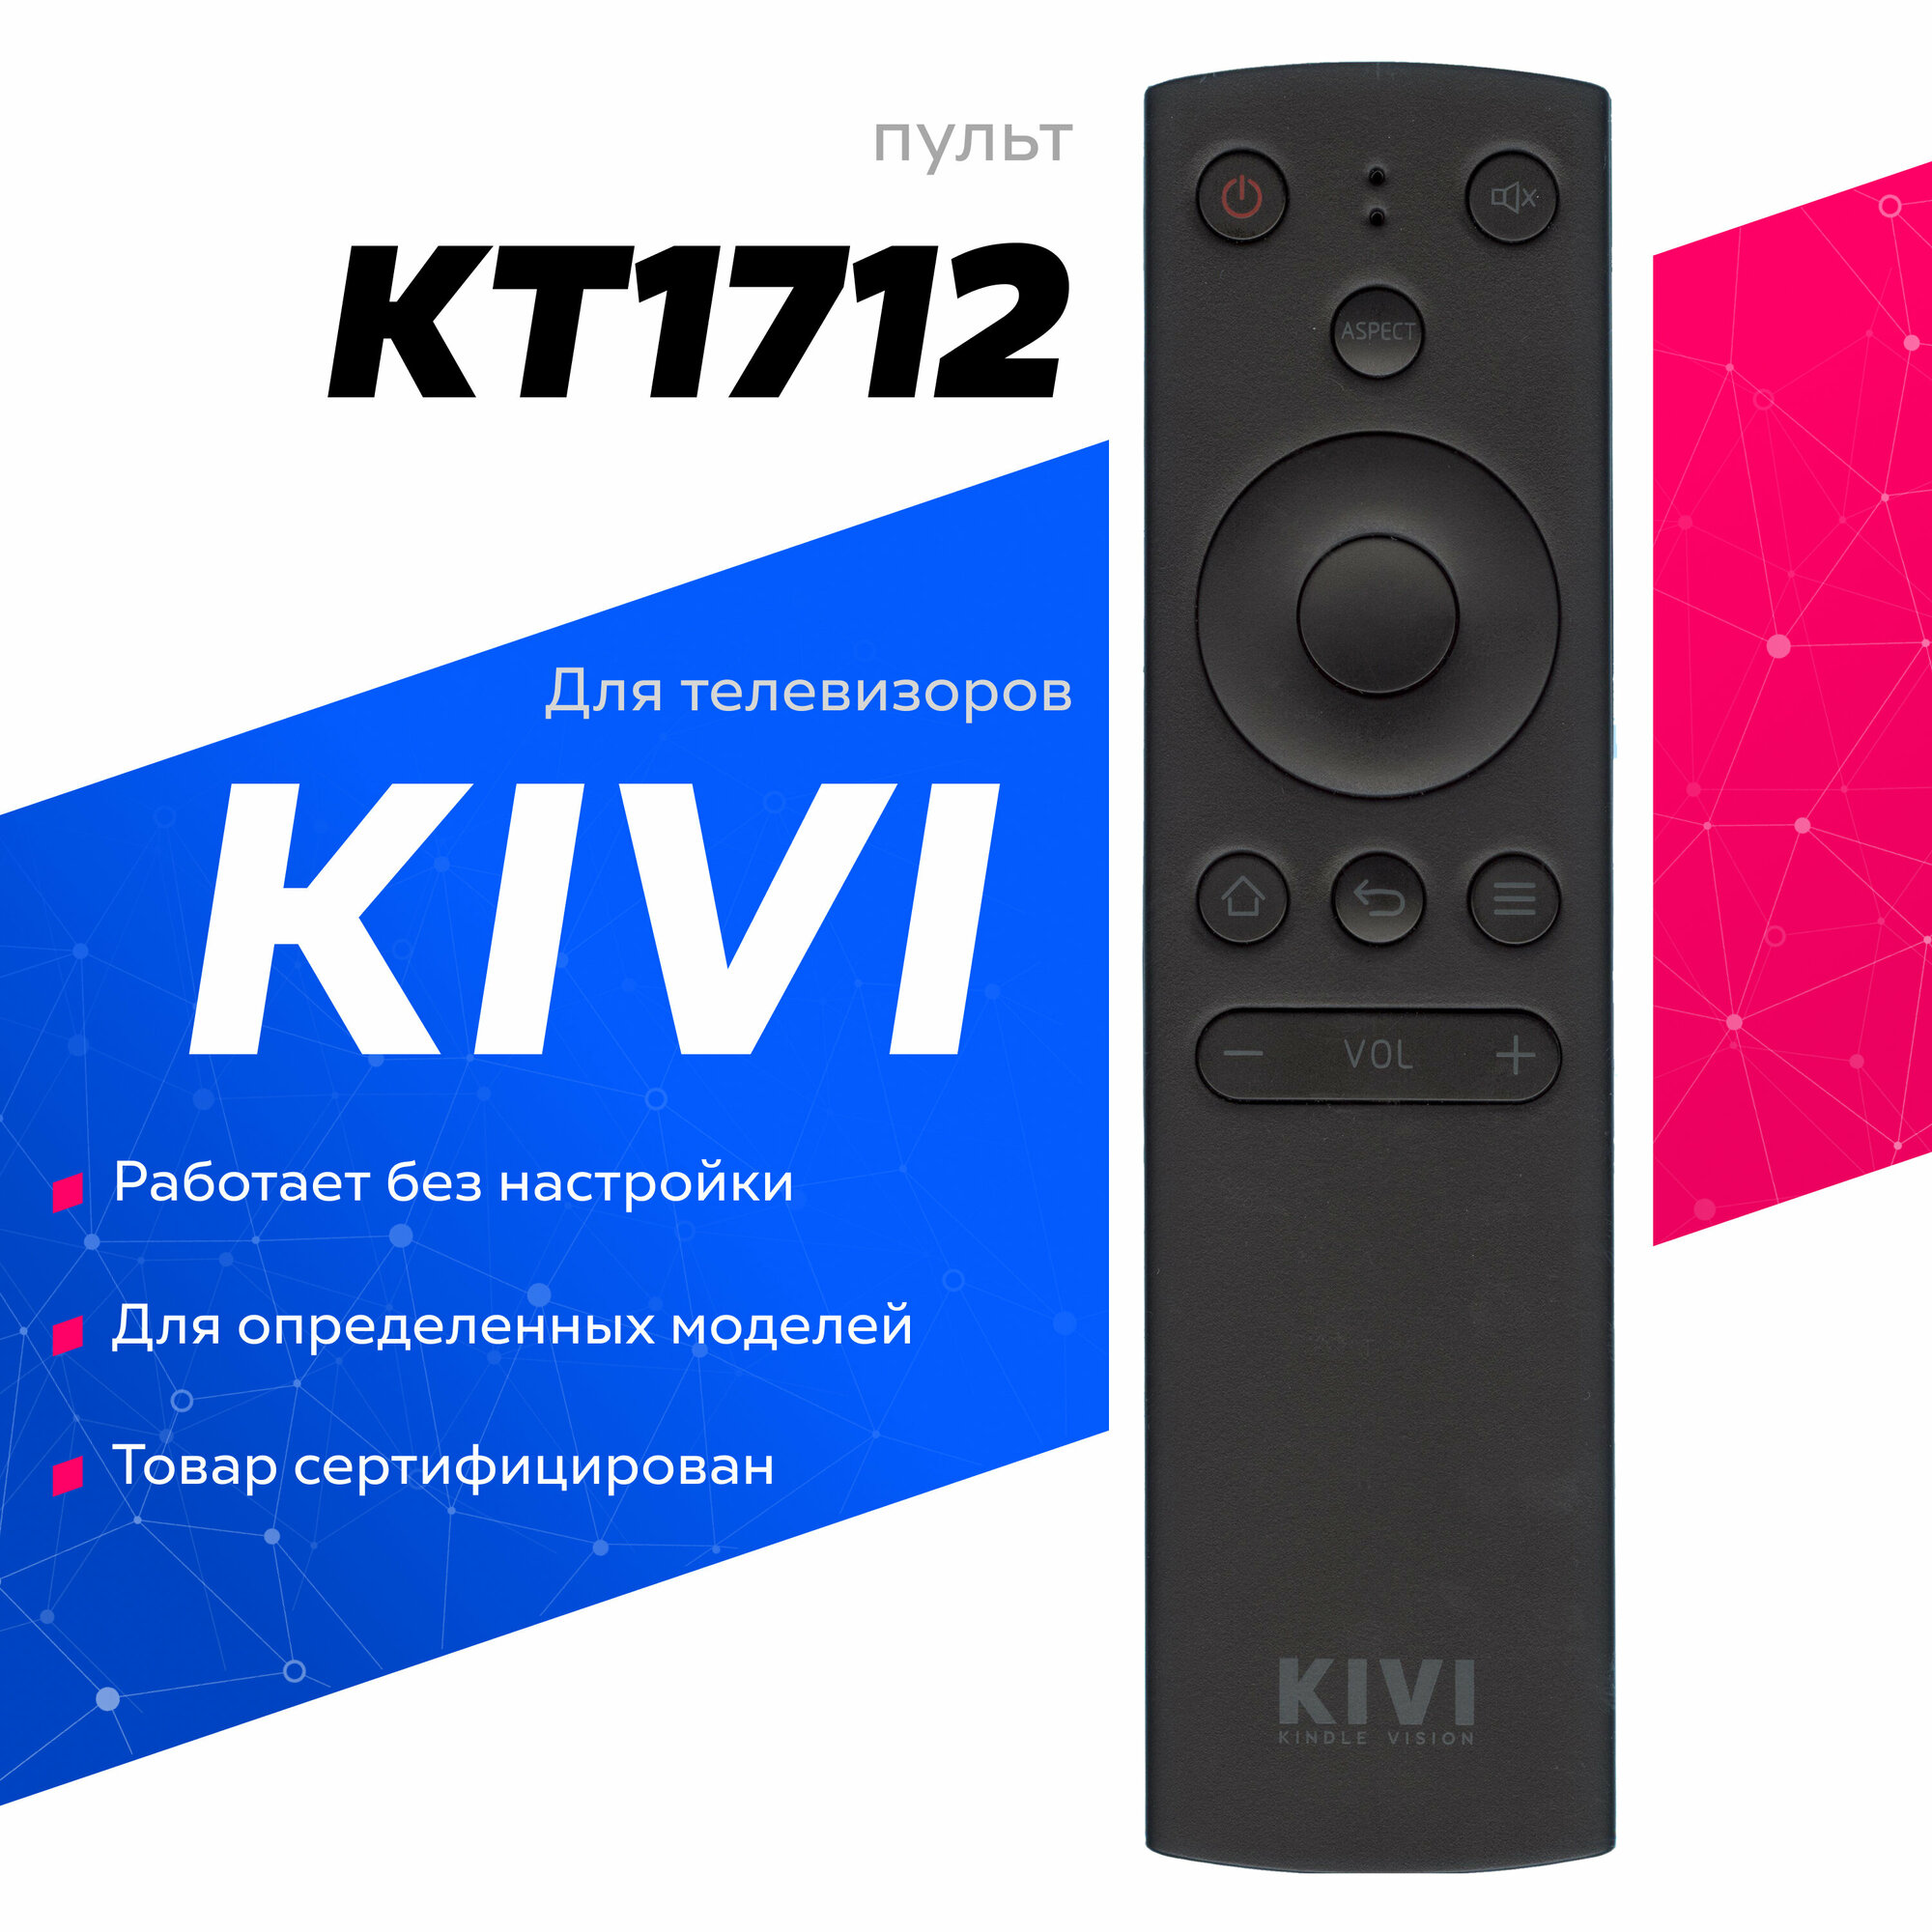 Пульт KIVI KT1712 KT-1717 (K504Q4350108) для телевизоров KIVI